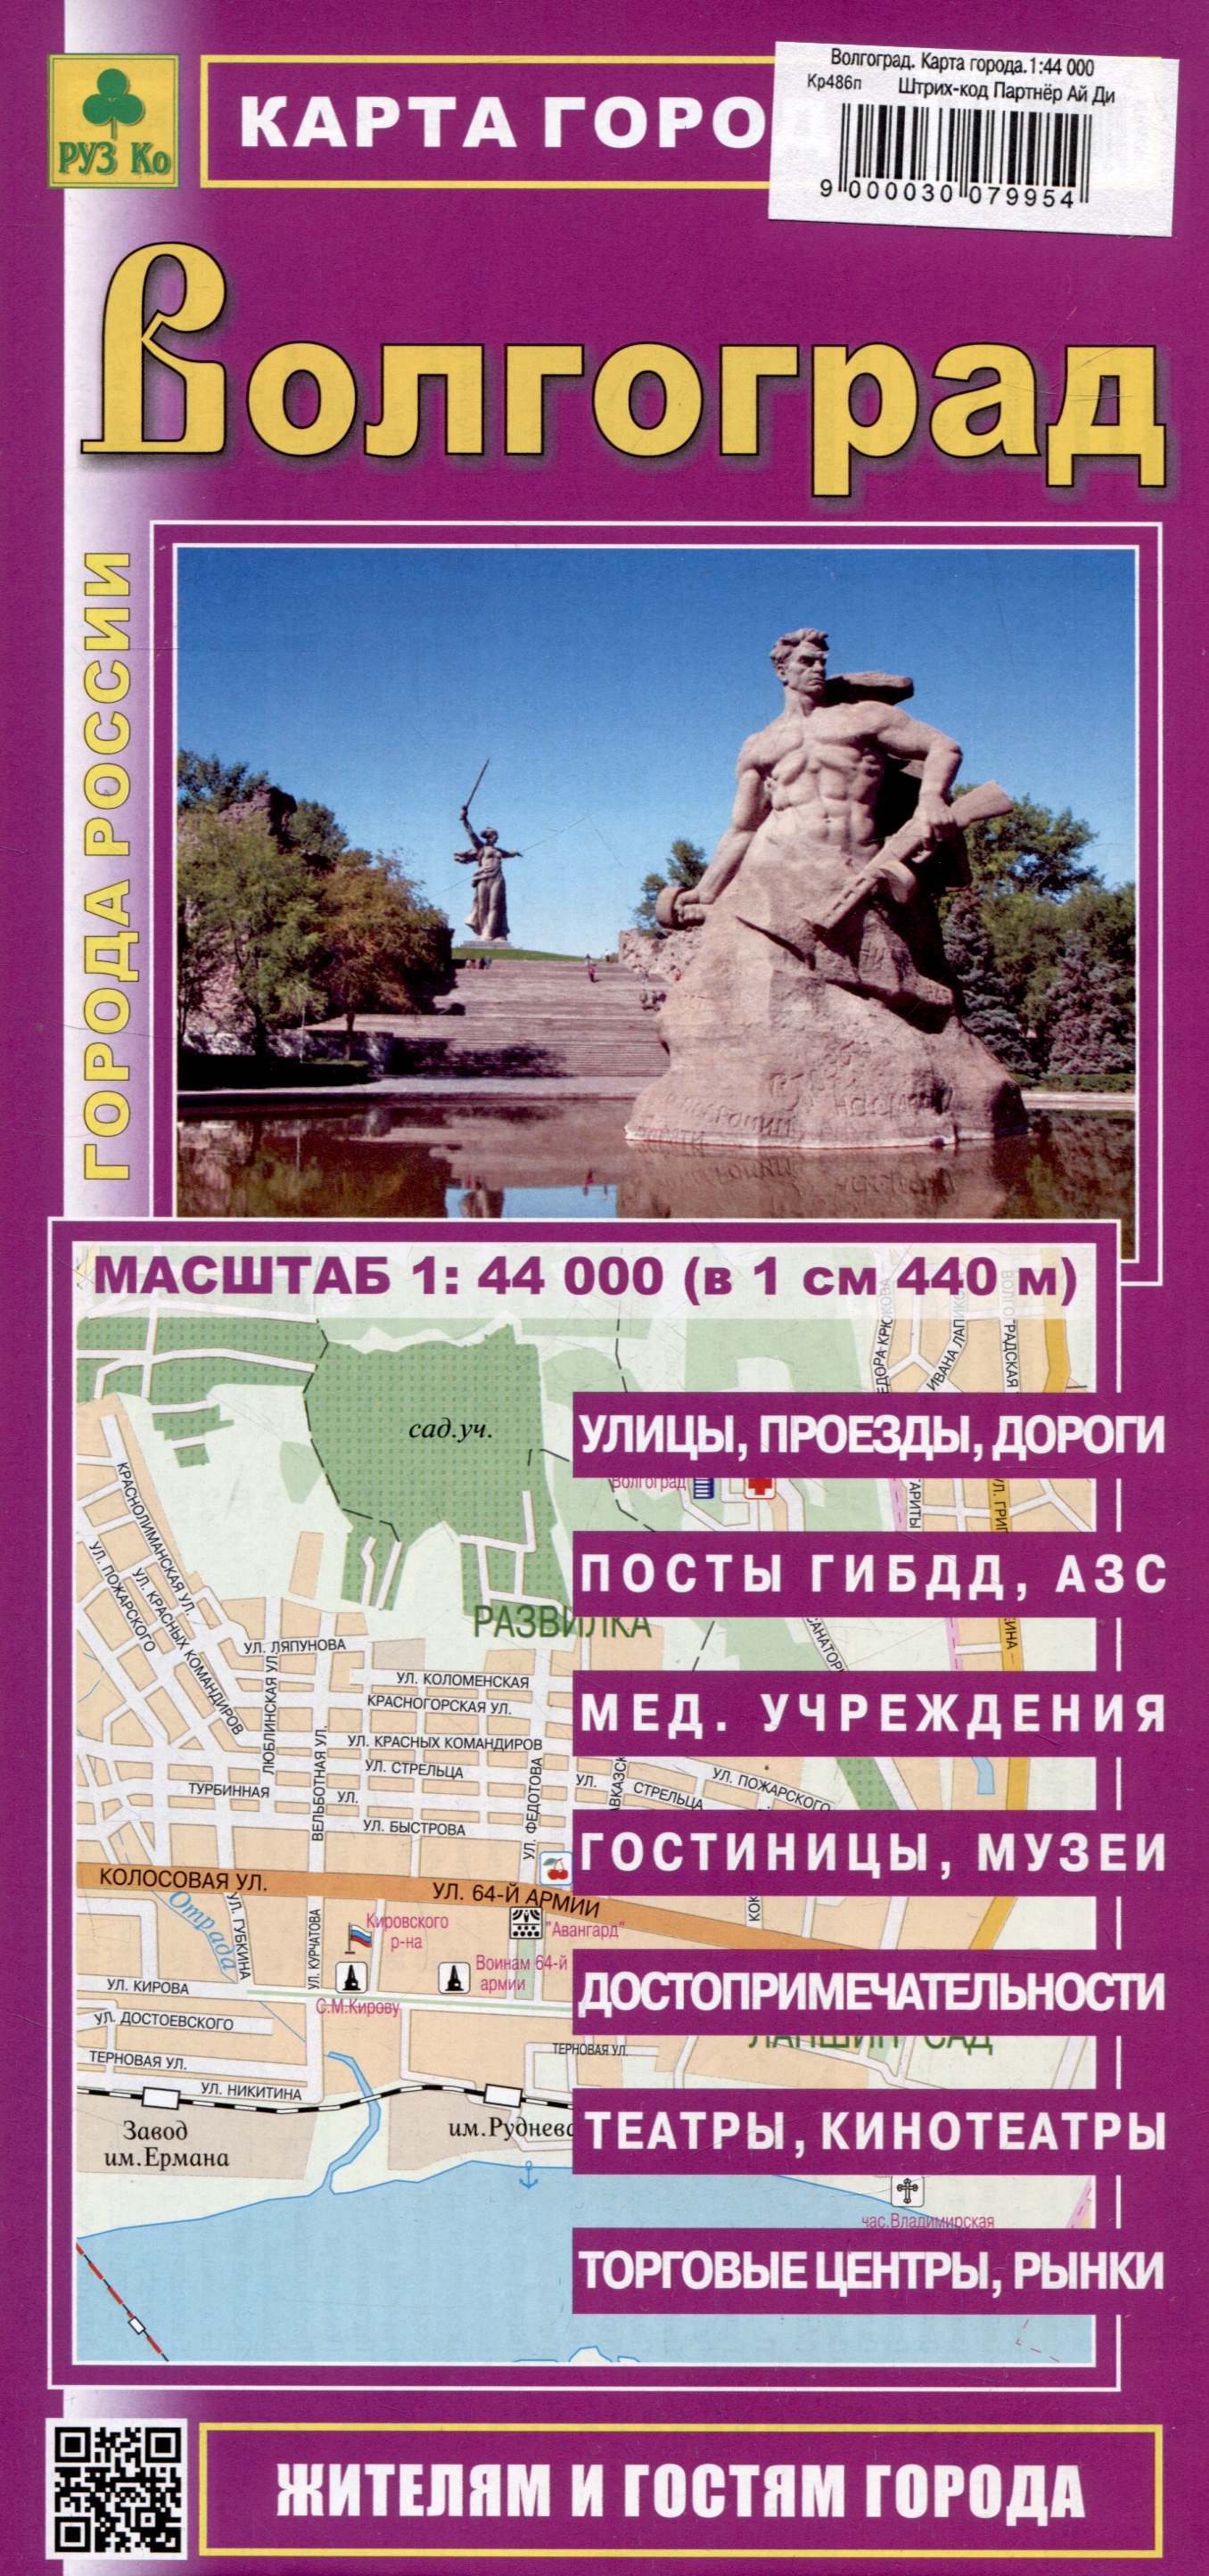 Волгоград. Карта города (М1:44 000)